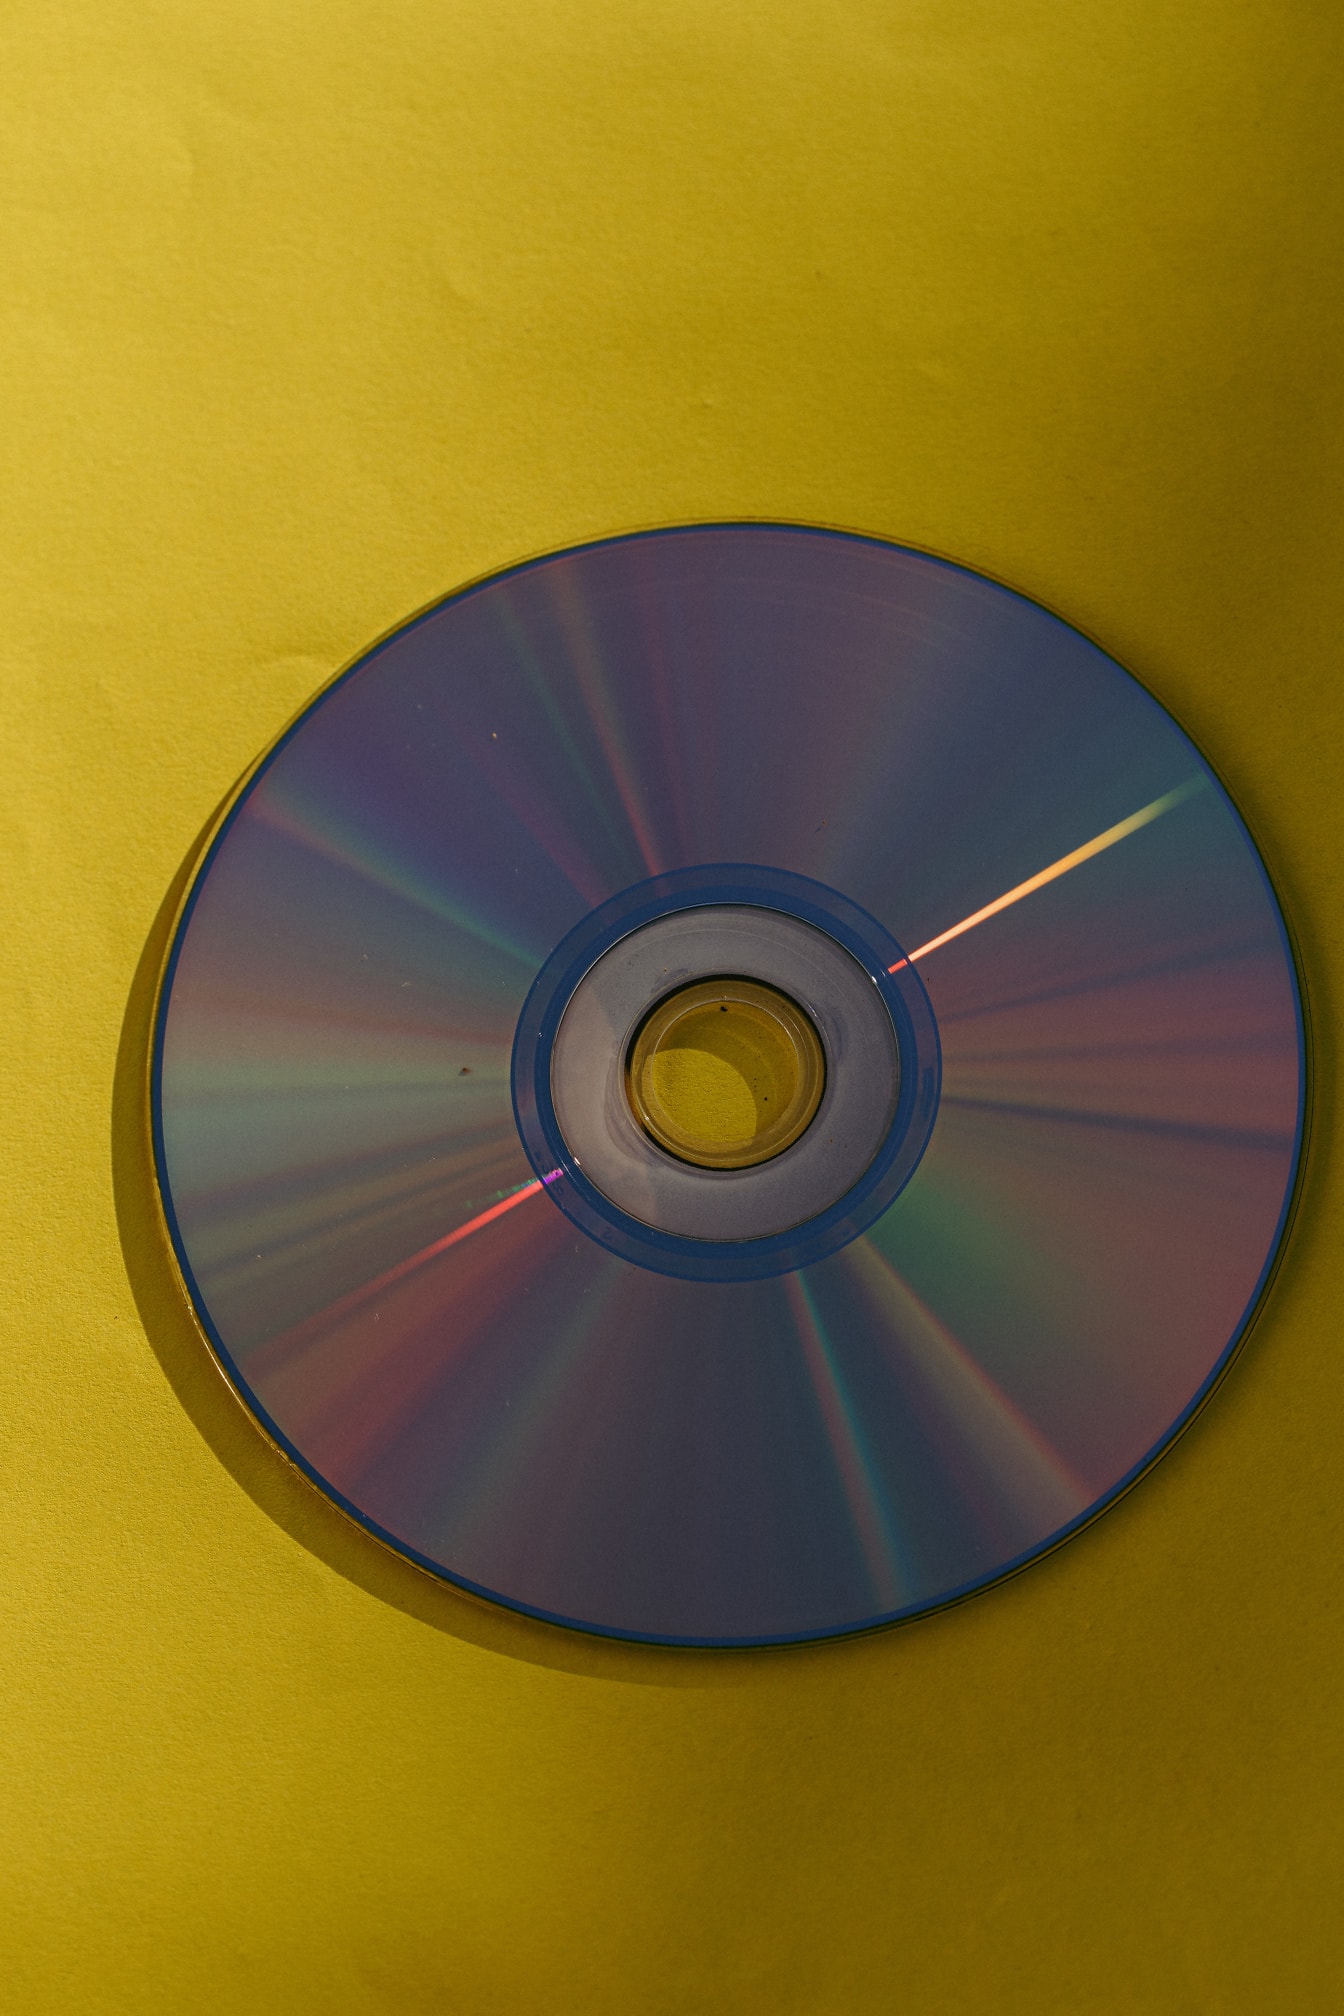 Back-up dvd-schijf met glanzende reflectie op geel papier